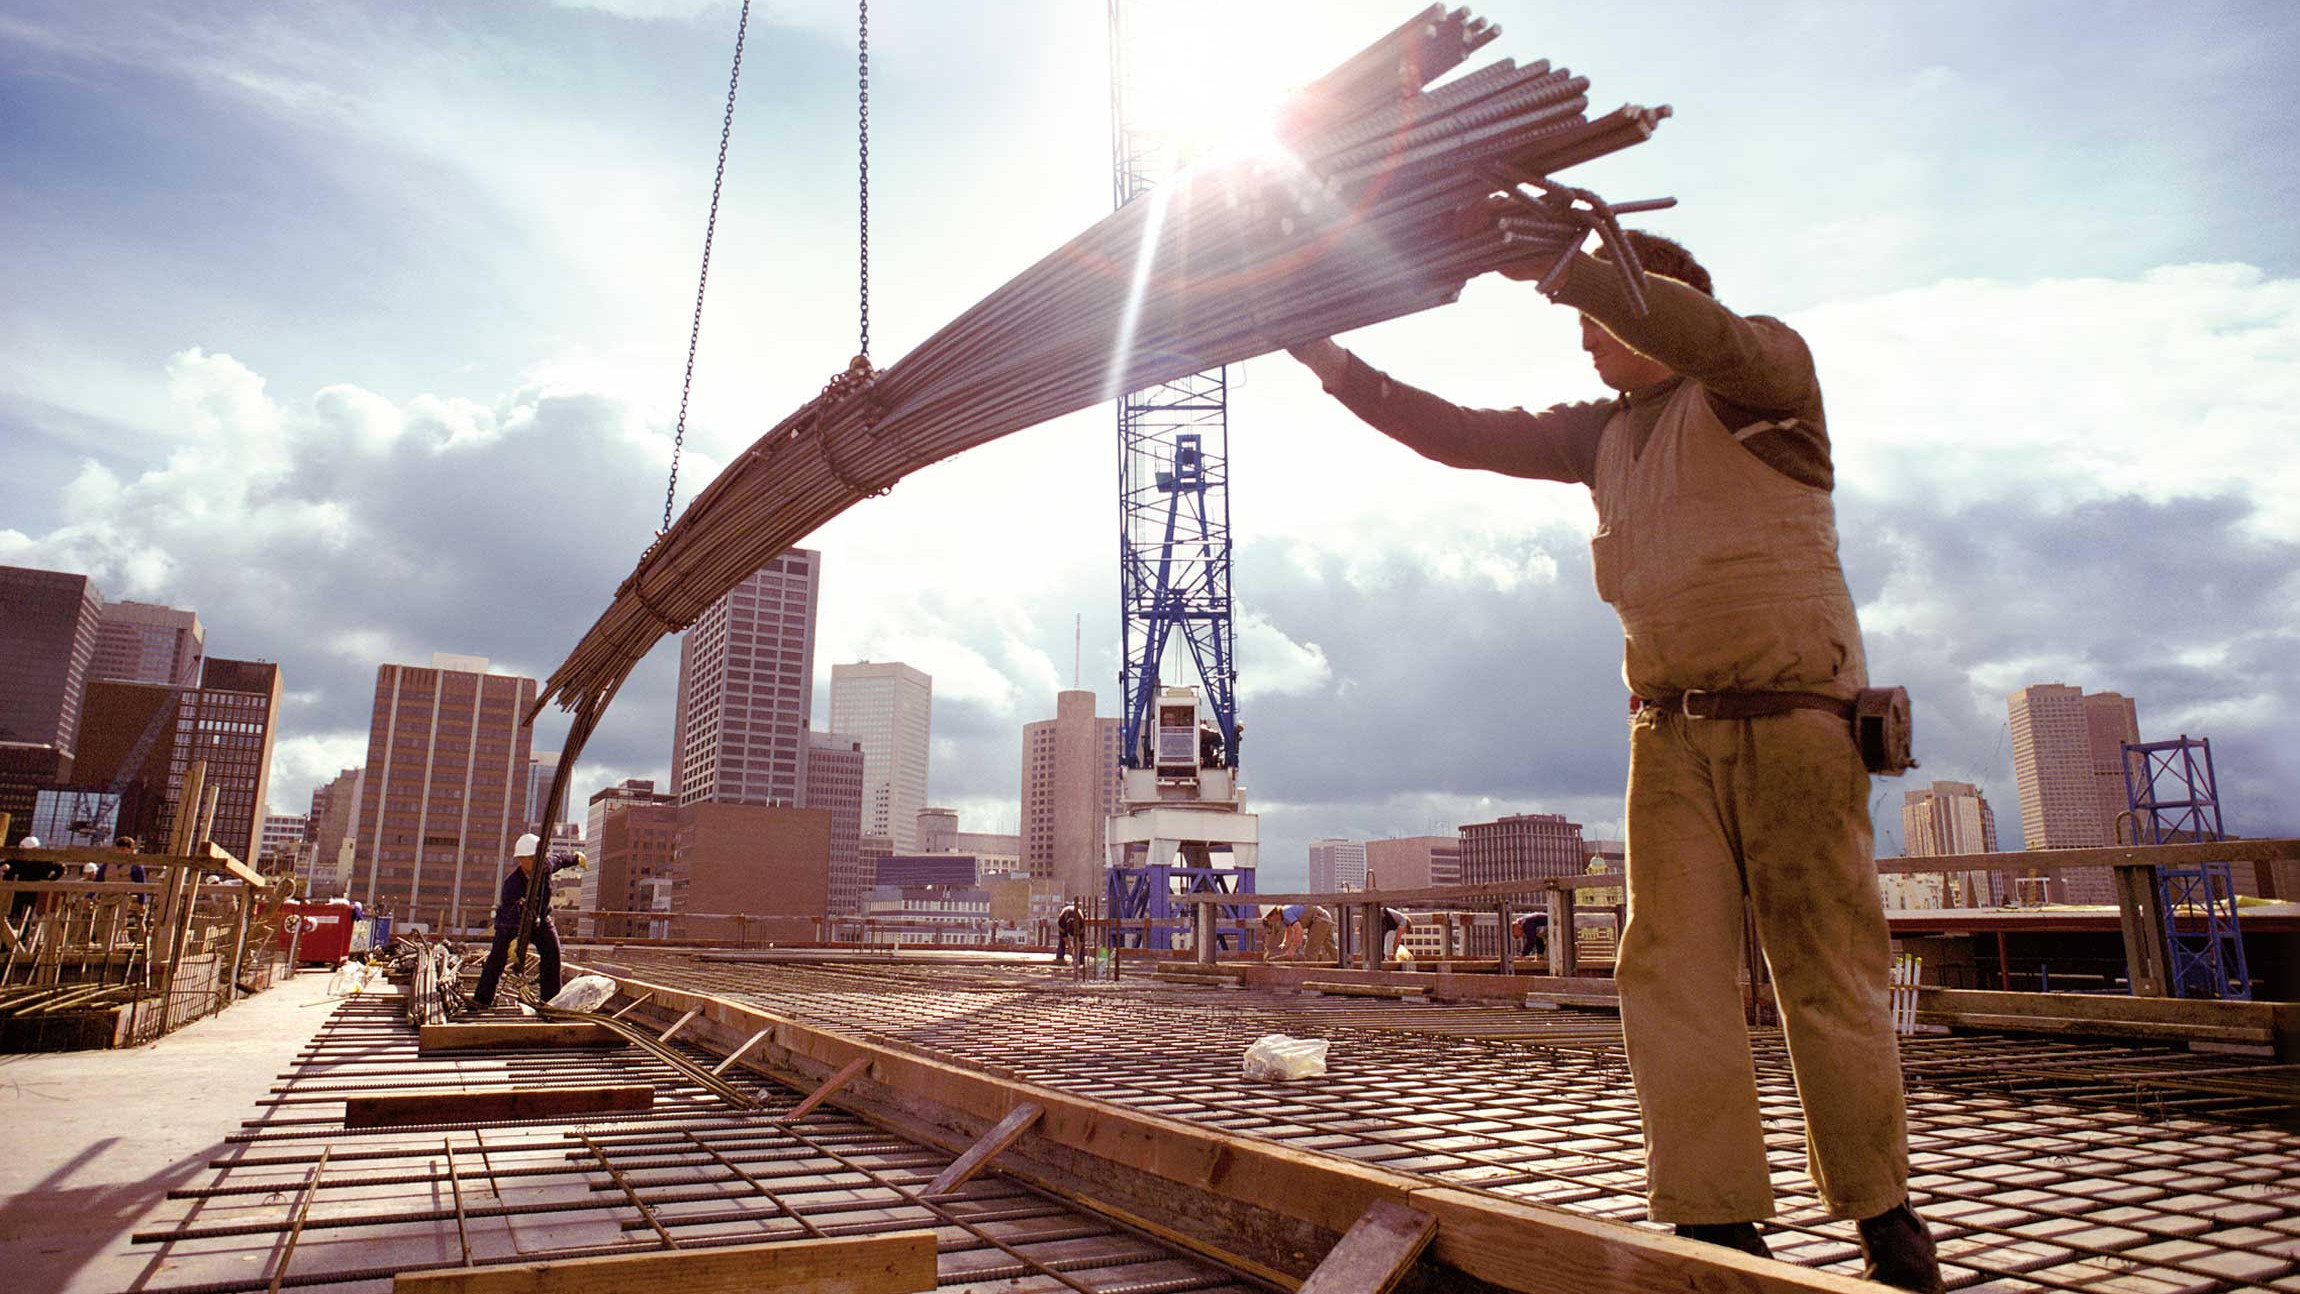 Bild: Auf einer Baustelle installieren Bauarbeiter Stahlträger